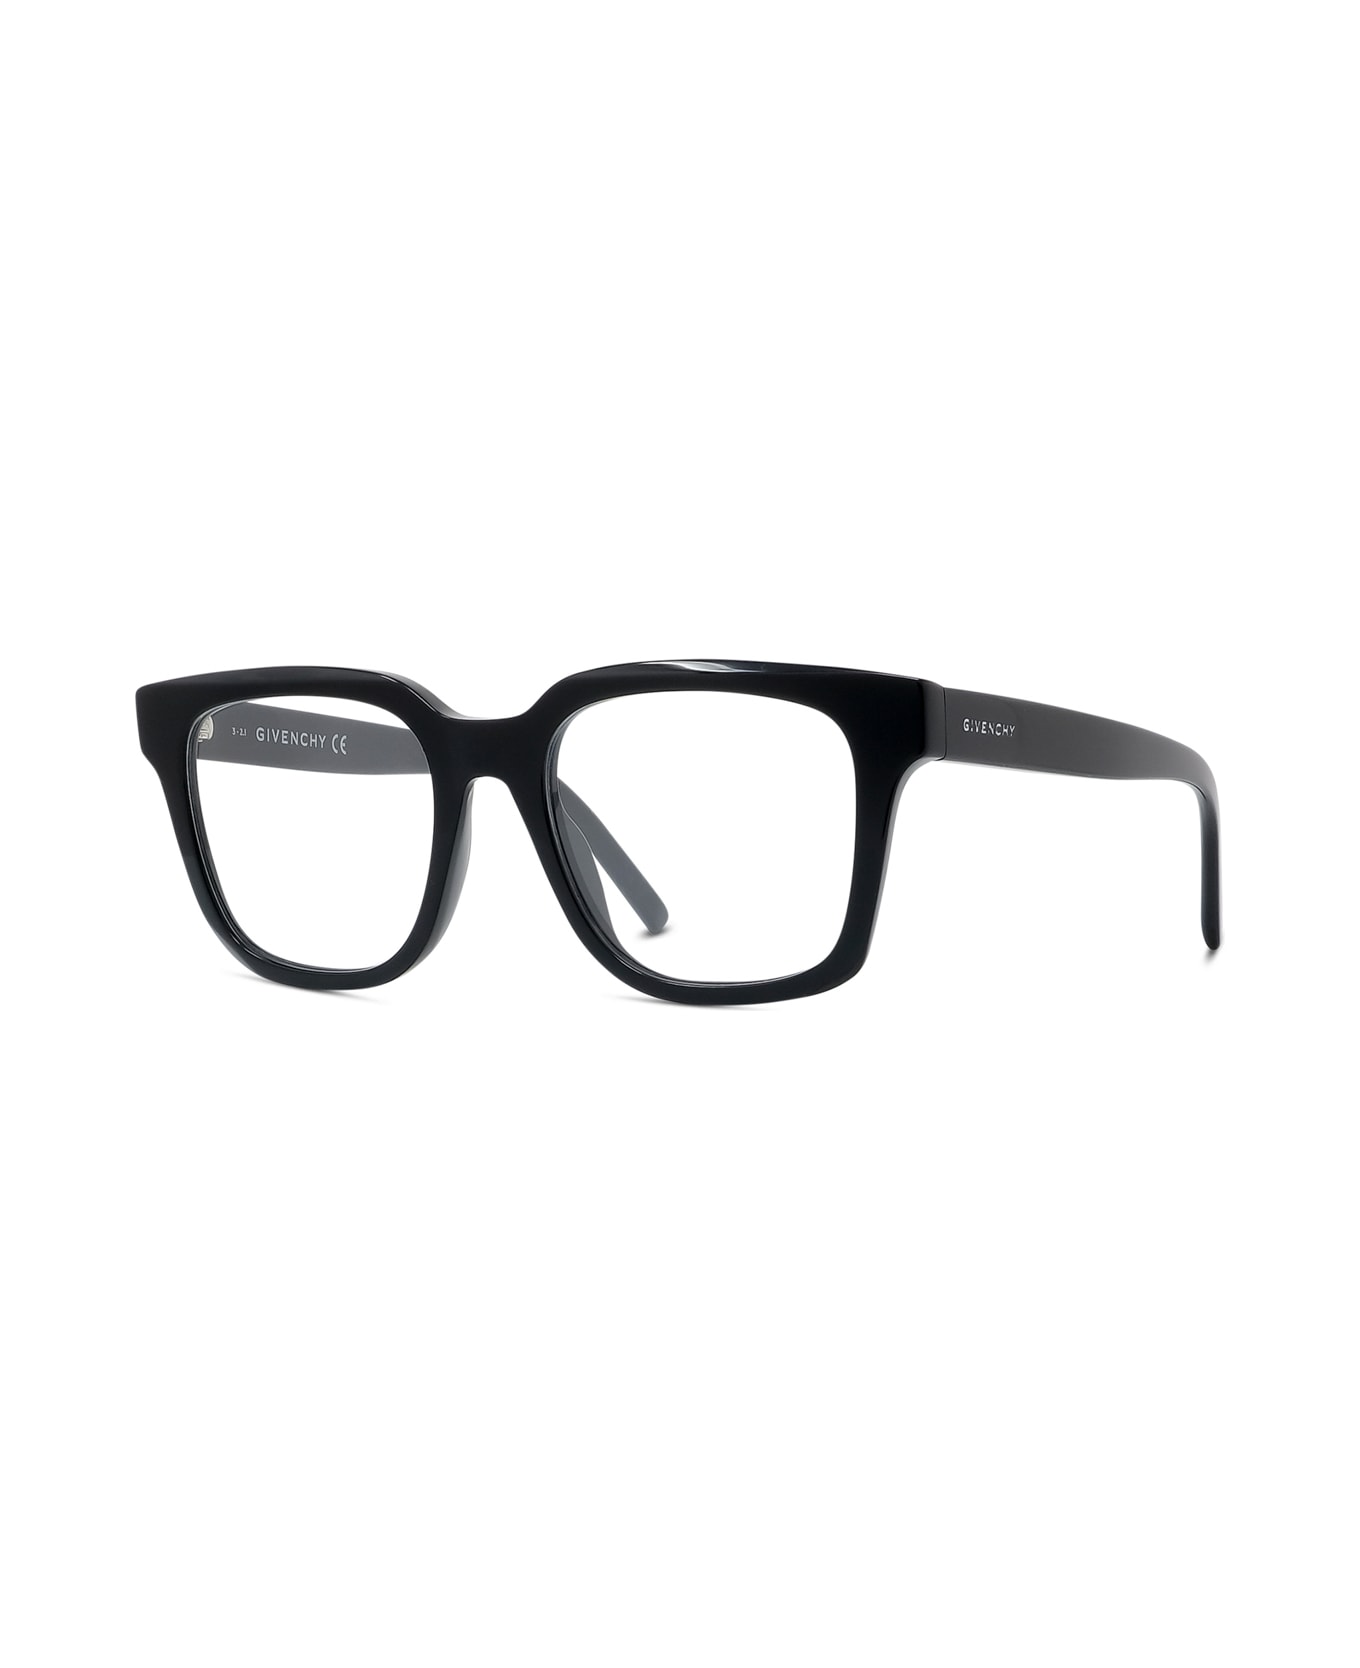 Givenchy Eyewear Gv50005i 001 Glasses